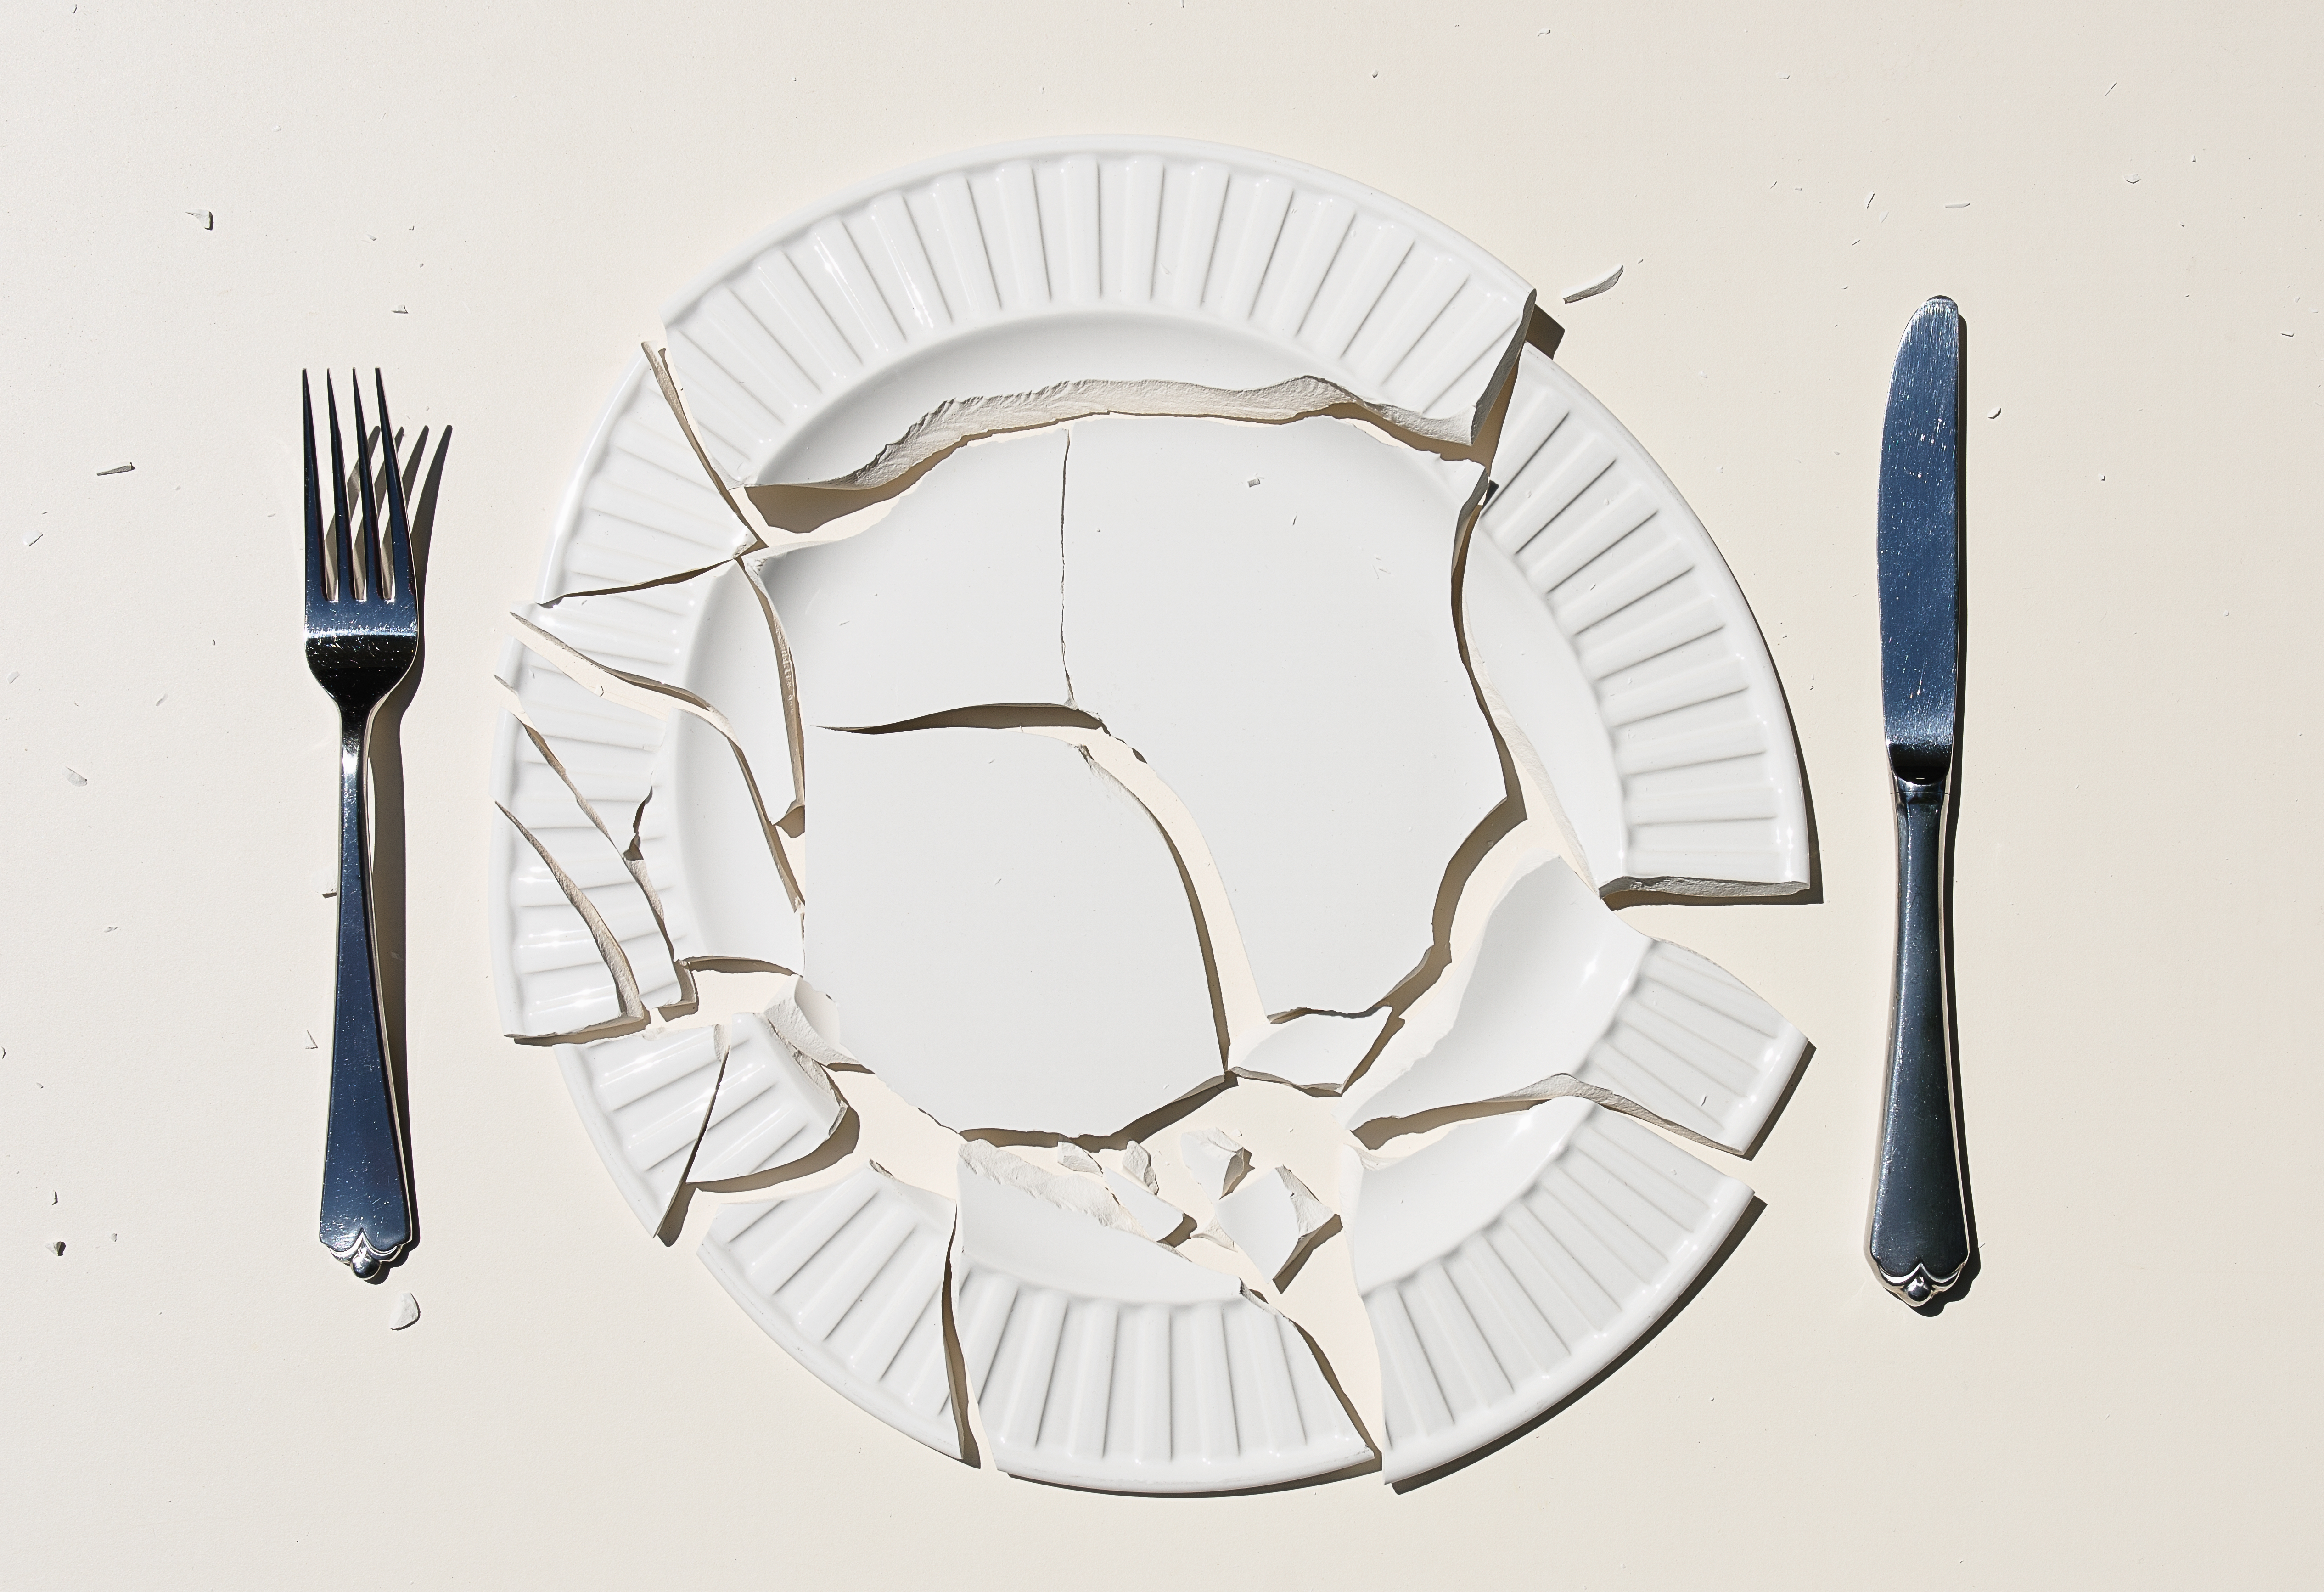 Что говорит народная примета, если разбить тарелку?